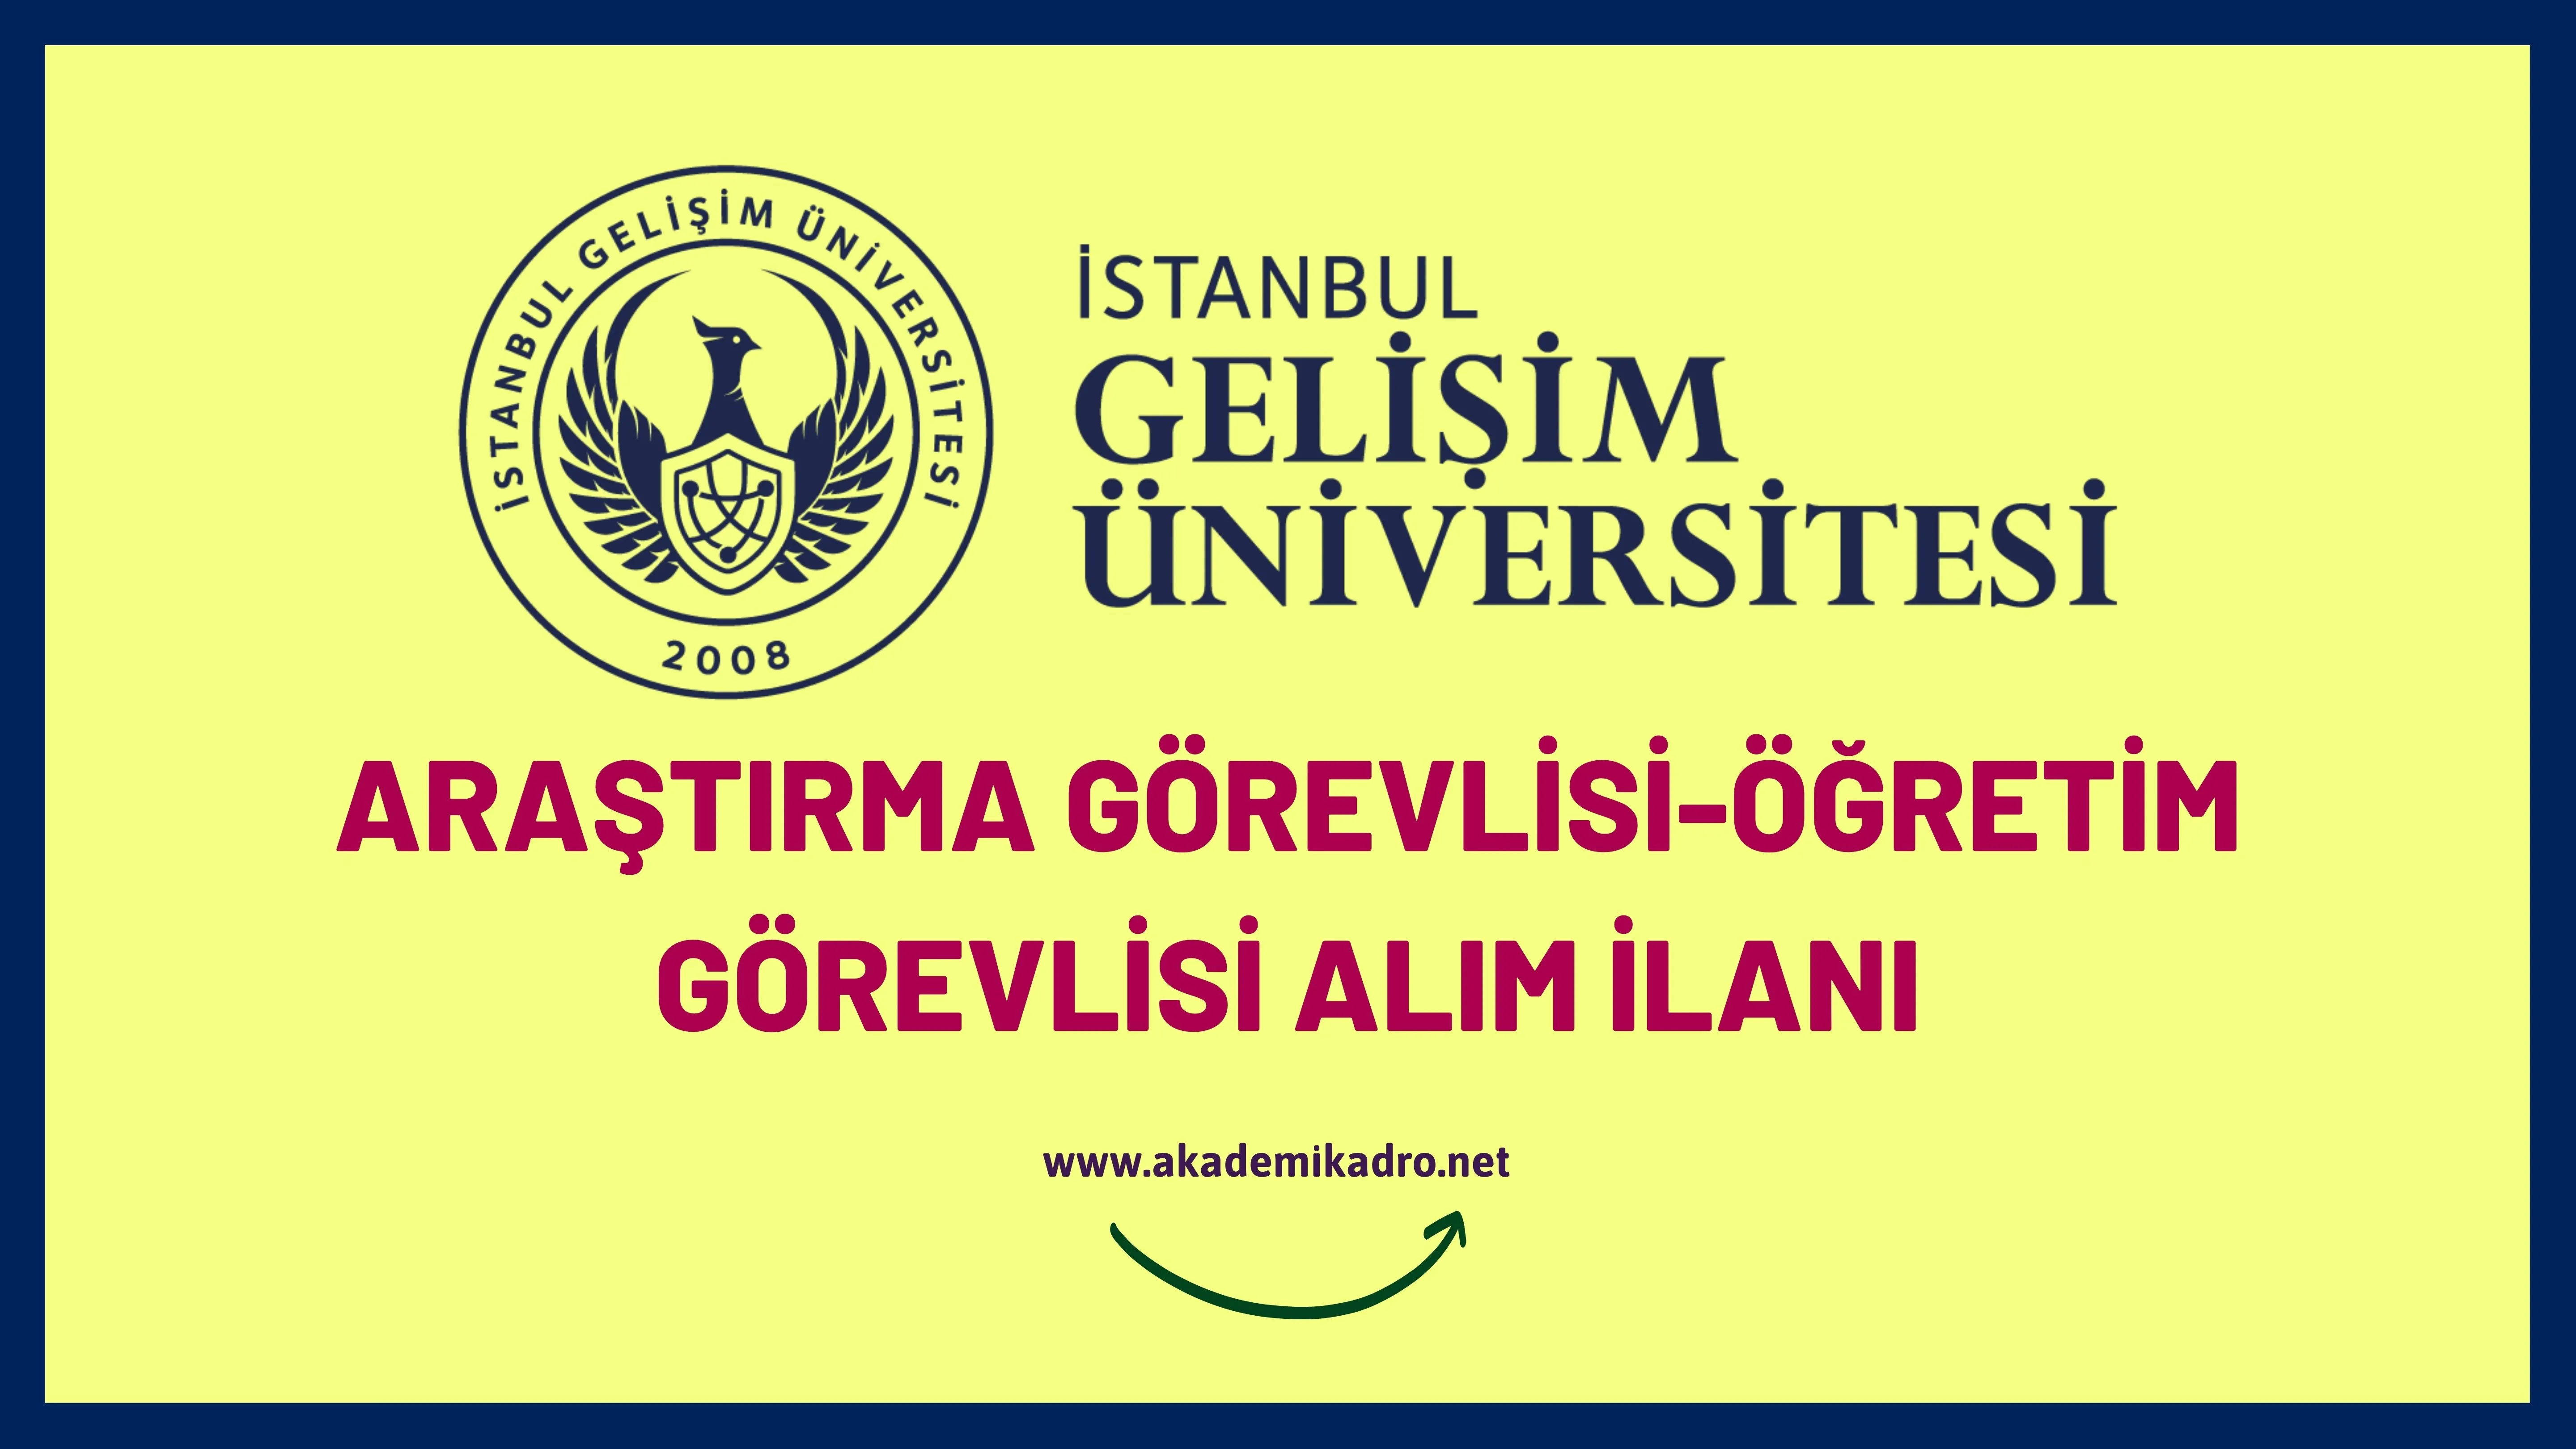 İstanbul Gelişim Üniversitesi 16 Araştırma görevlisi, 12 Öğretim görevlisi ve 75 öğretim üyesi alacaktır.